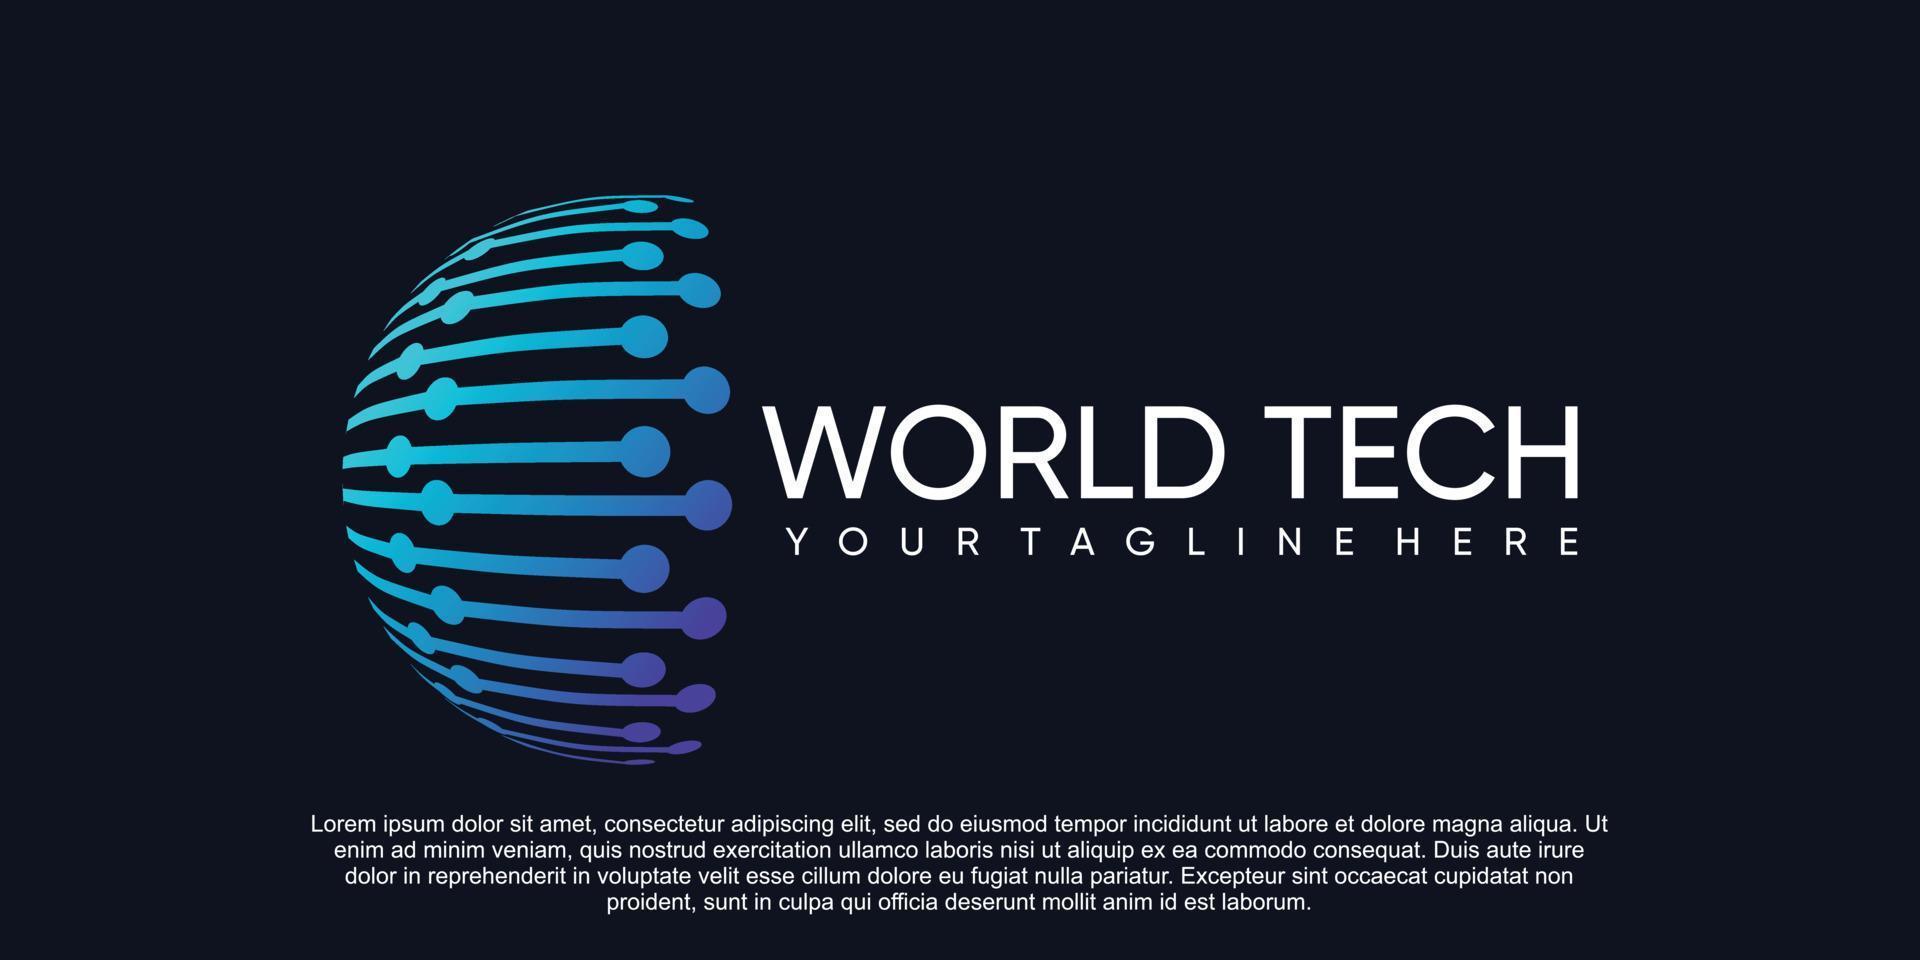 wereld tech logo ontwerp premie vector